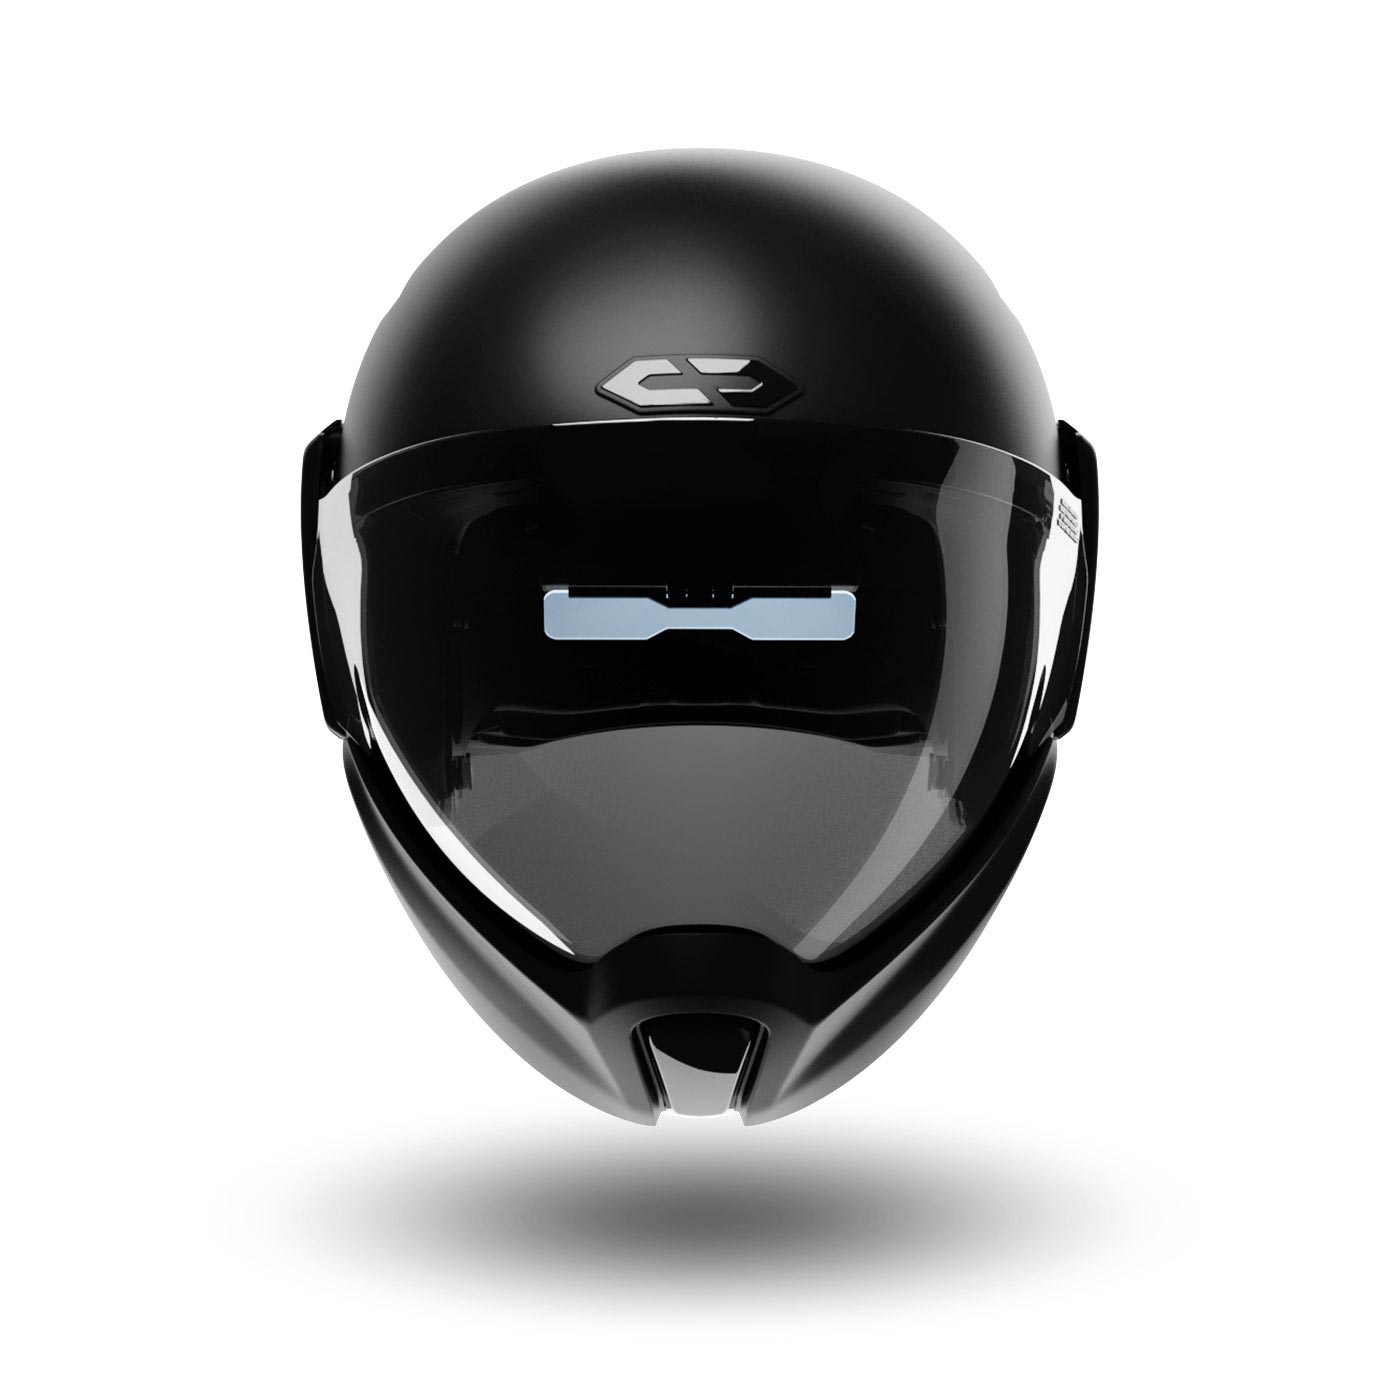 Five Safest Helmets for Under $200